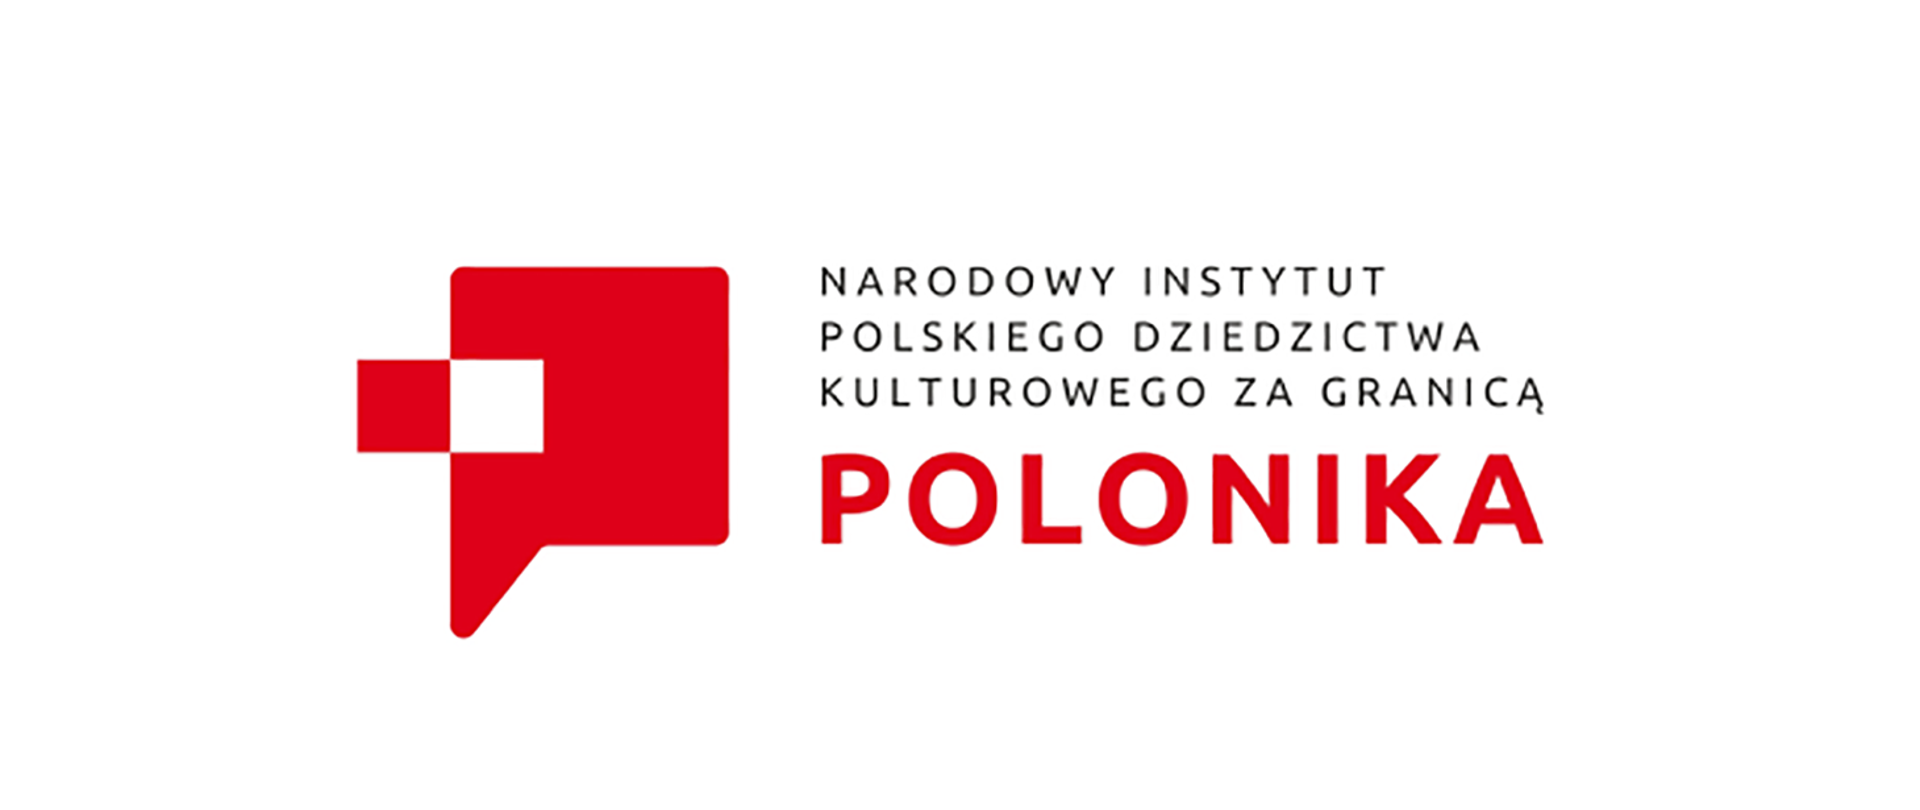 Narodowy Instytut Polskiego dziedzictwa kulturowego za granicą - Polanika